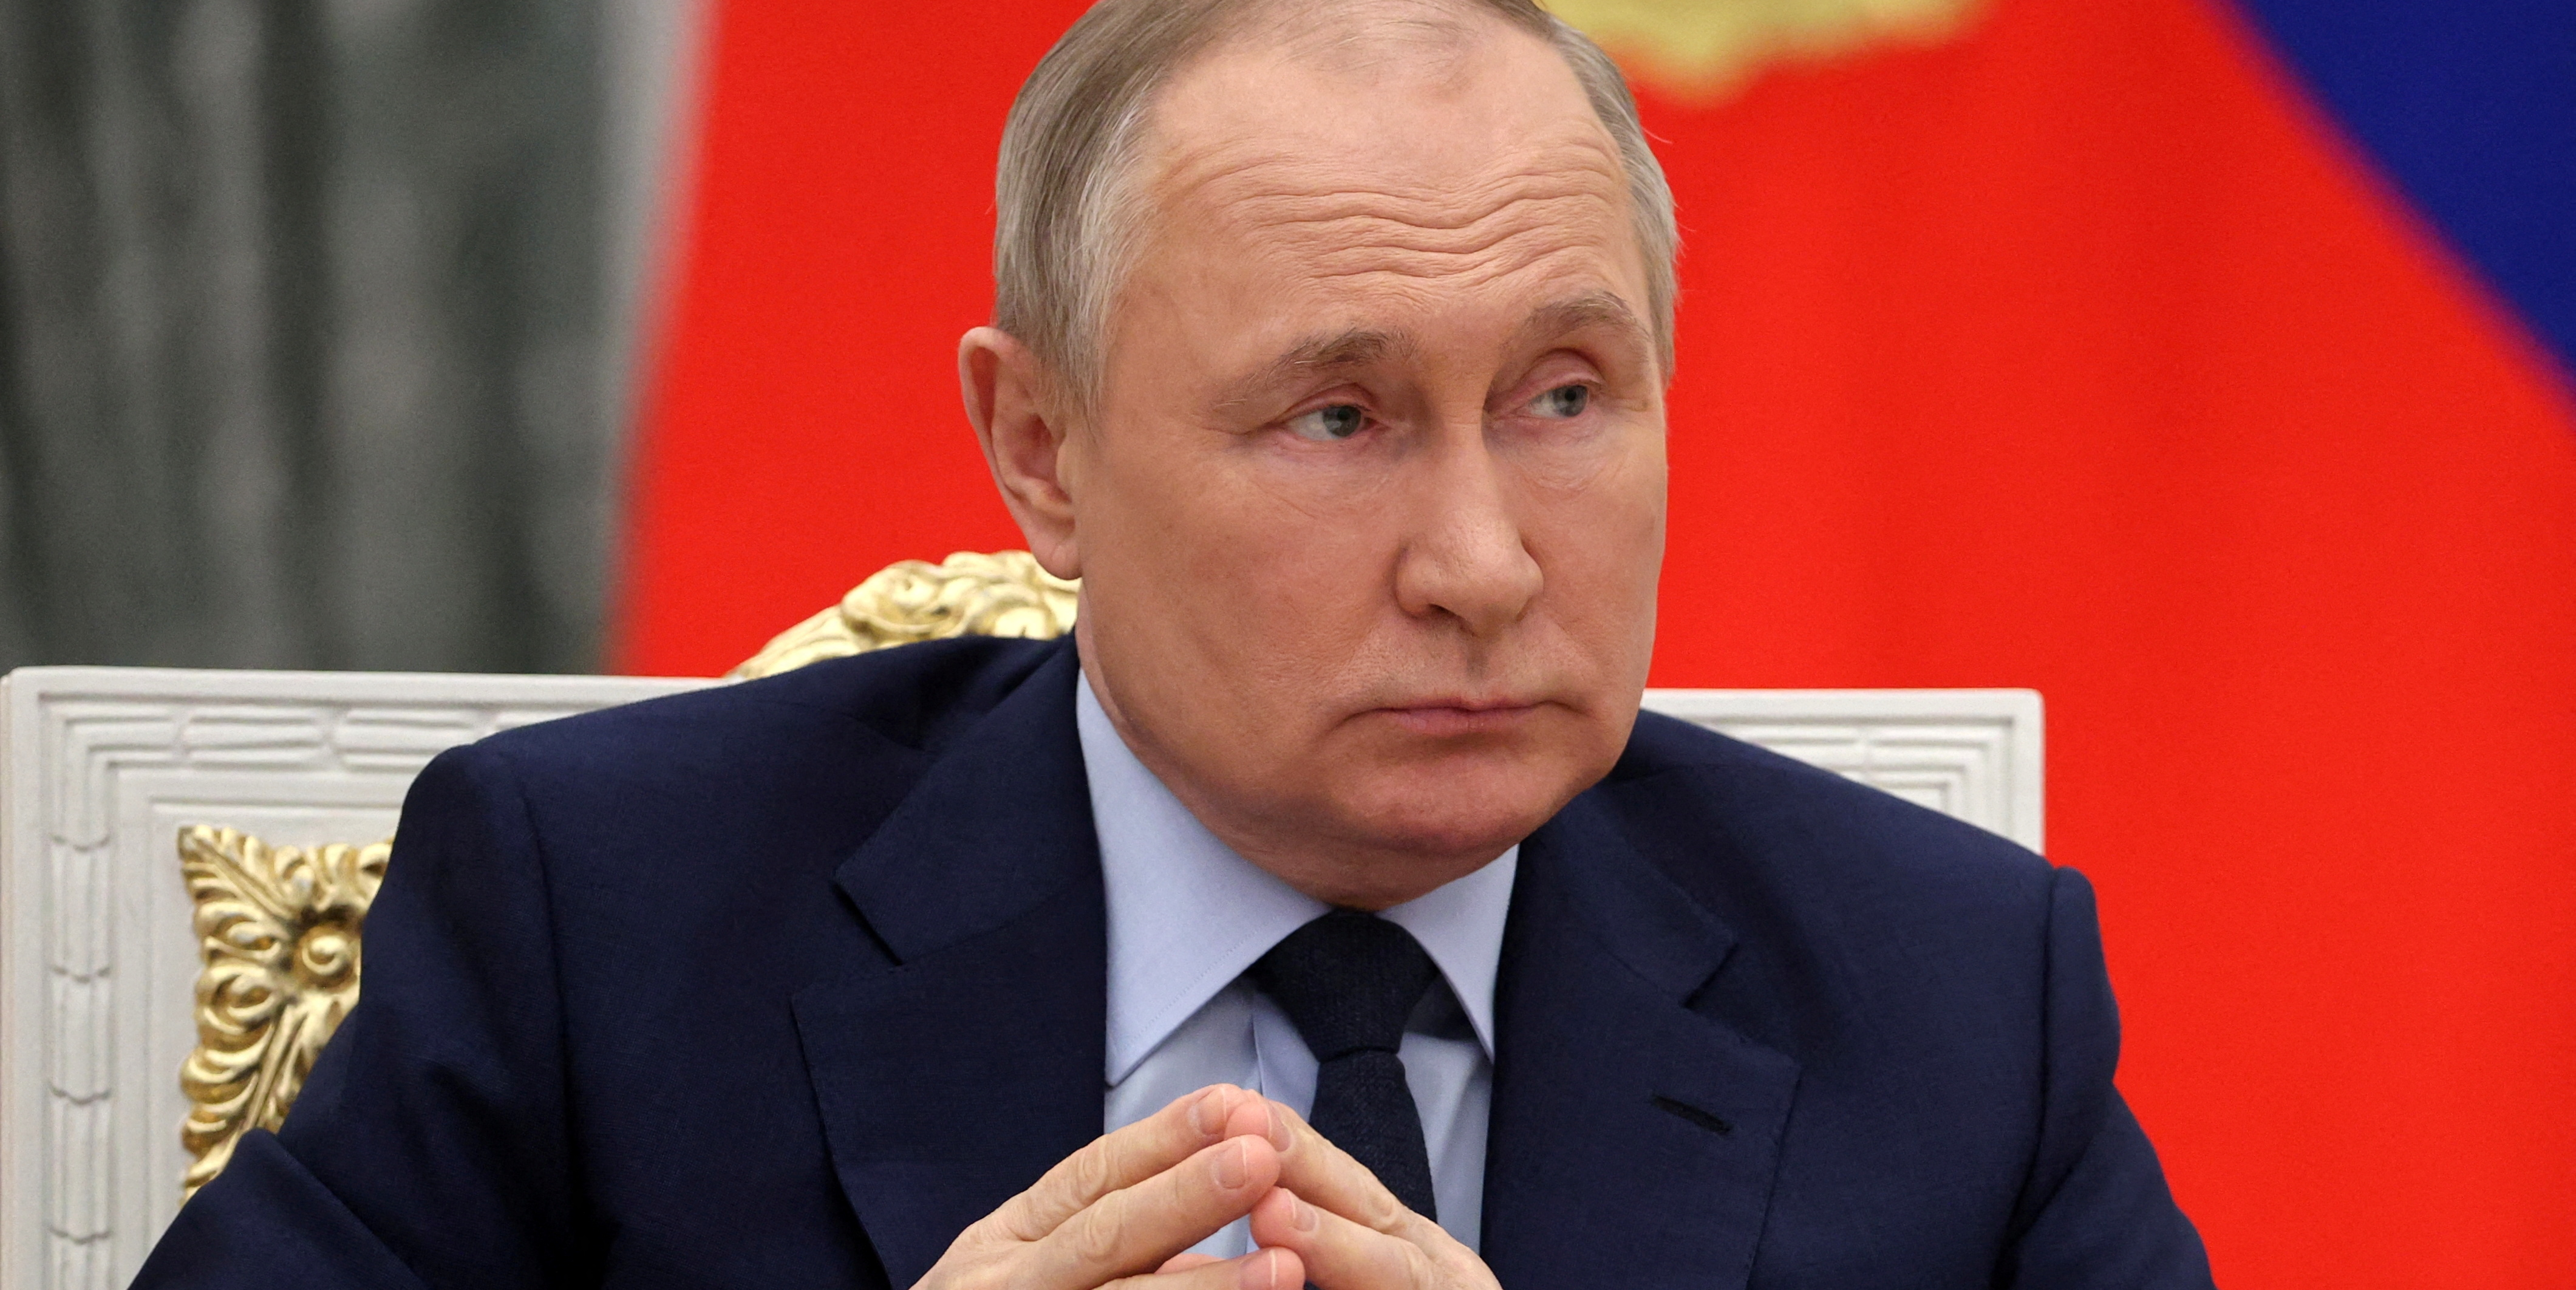 Les ultranationalistes Russes estiment que Poutine n'est pas assez ferme